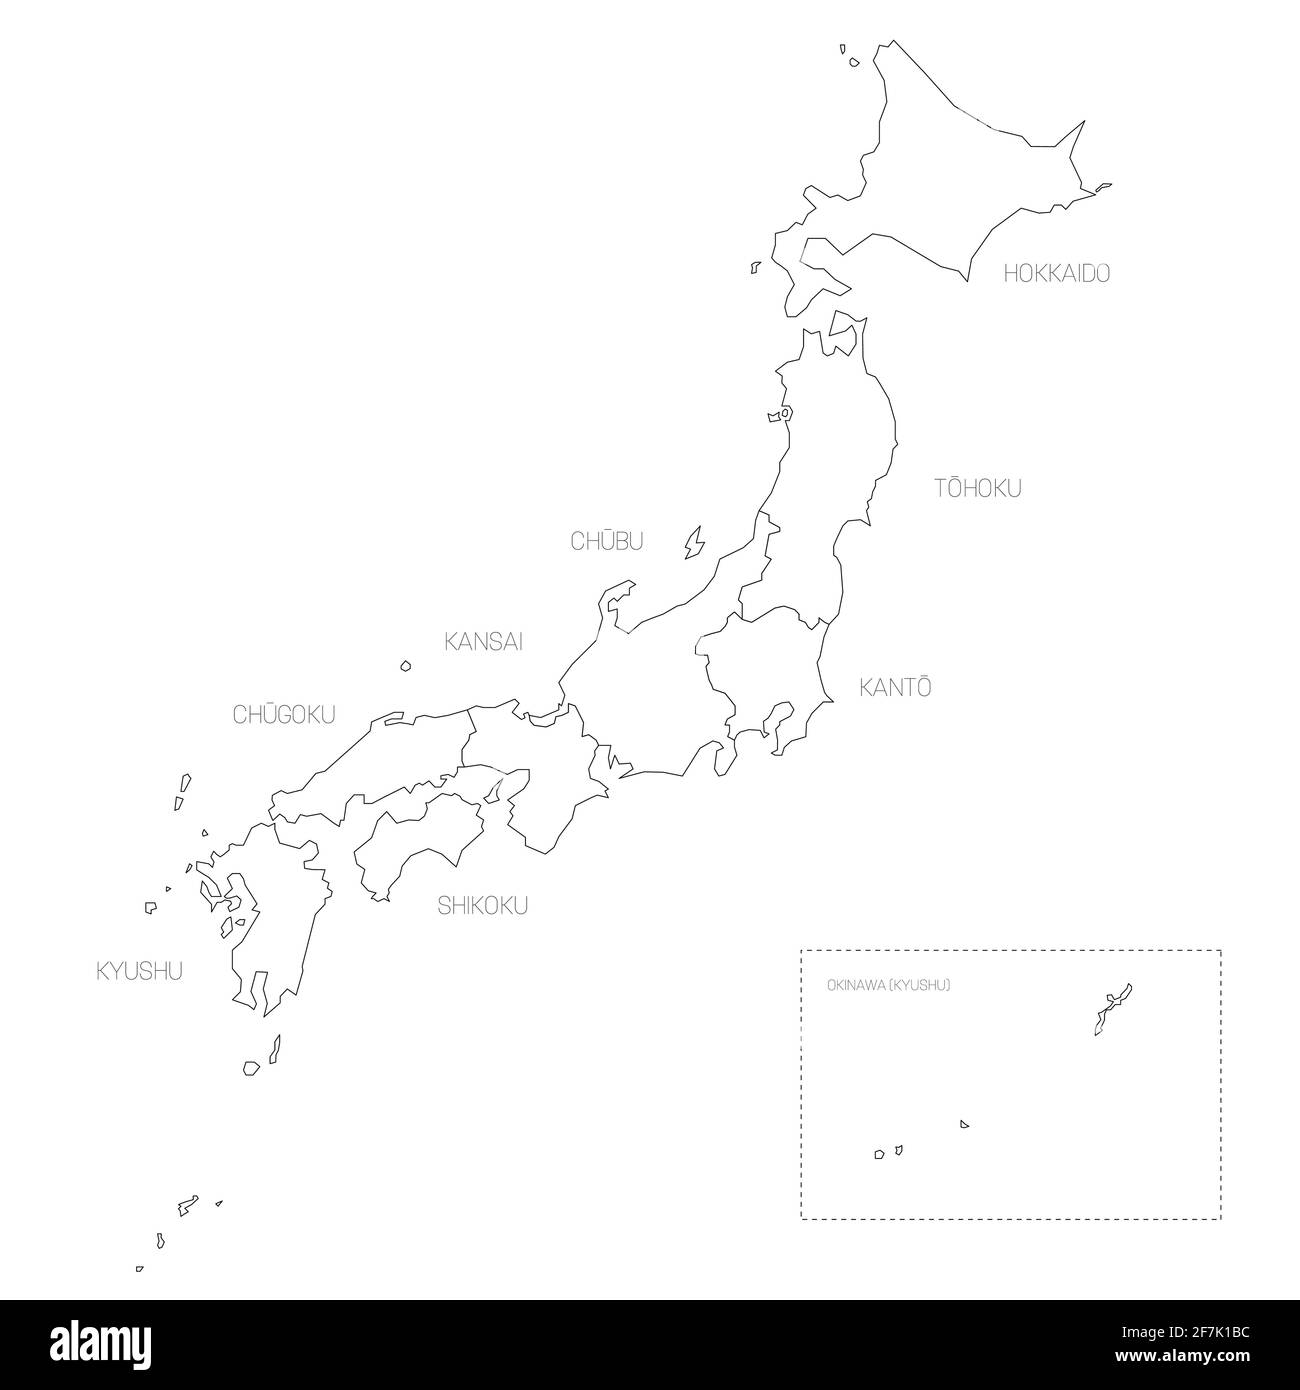 Japon - carte politique des régions Illustration de Vecteur